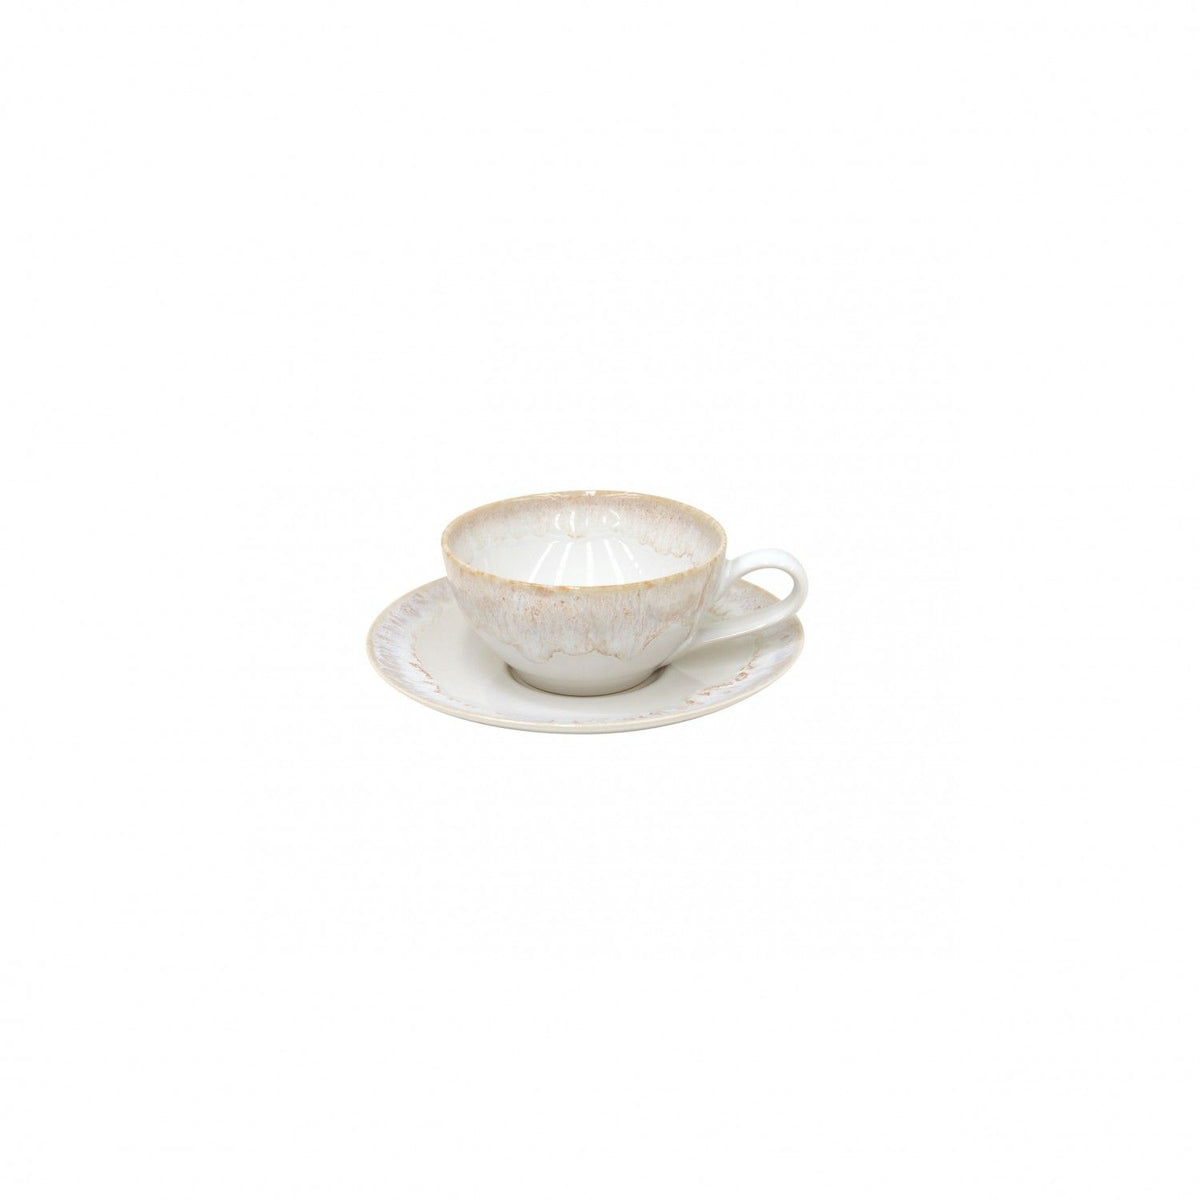 Taormina White Tea Cup and Saucer